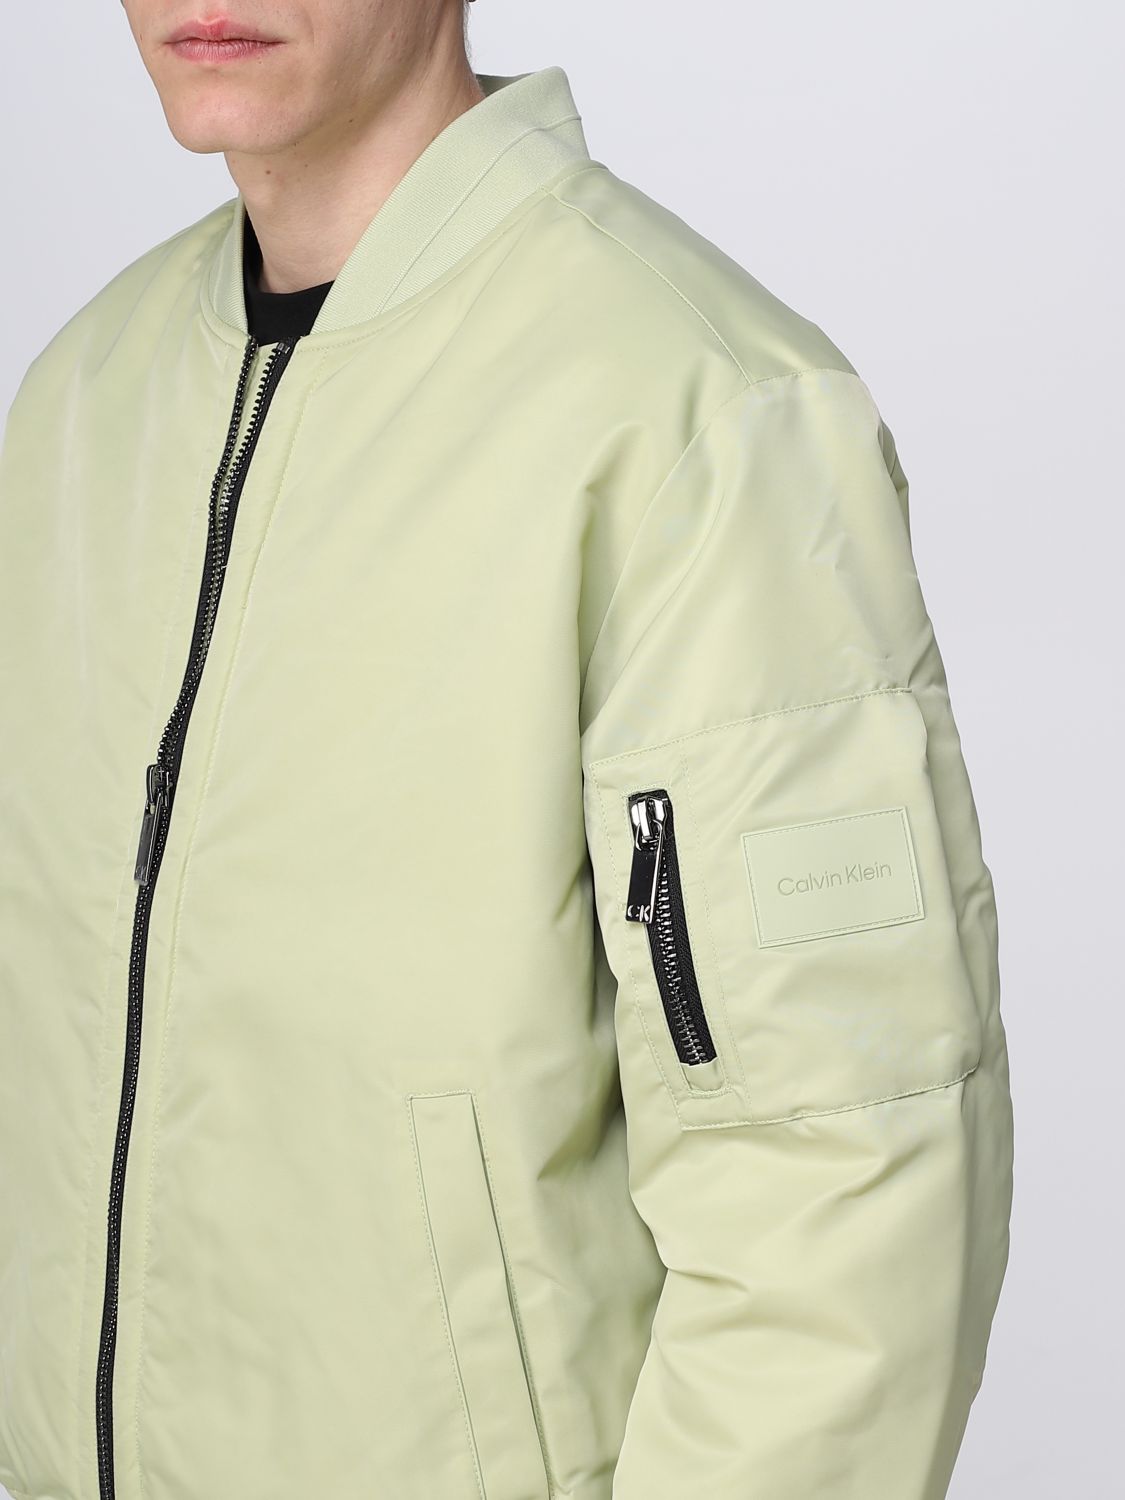 man Klein jacket K10K109907 jacket | for KLEIN: online - at Calvin Green CALVIN